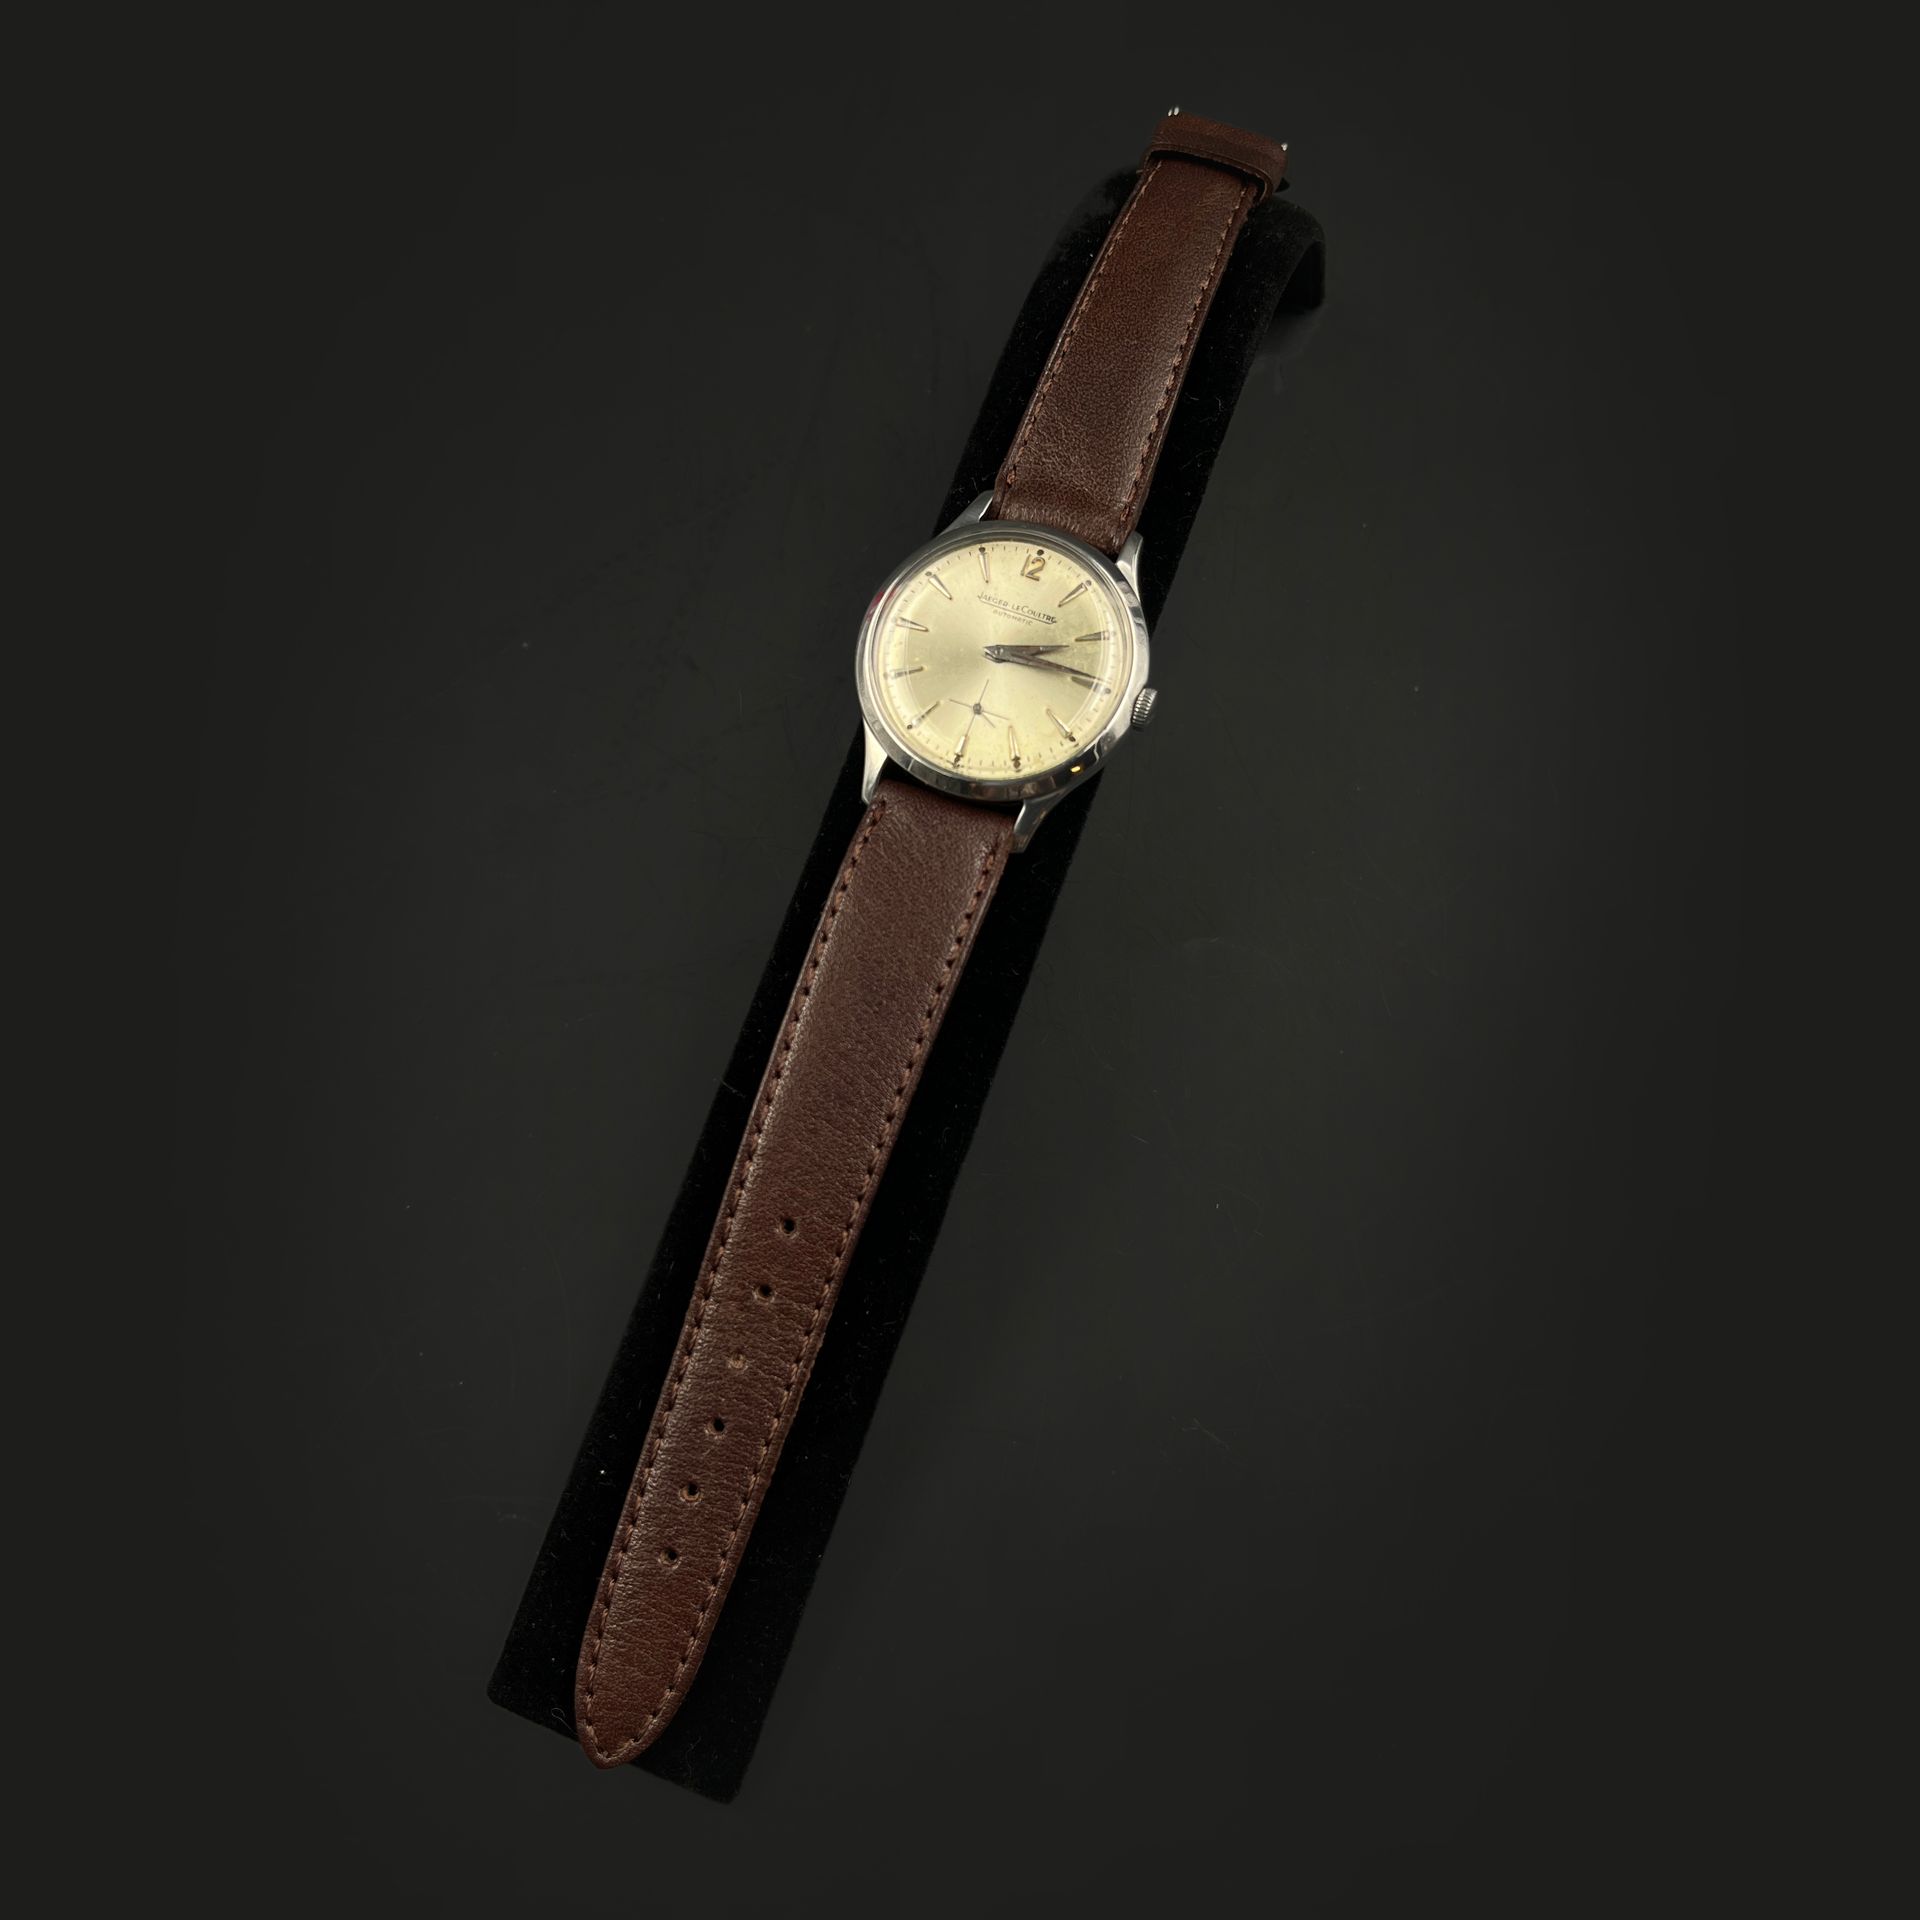 Jaeger-LeCoultre, n°649016, vers 1950 经典精钢腕表，旋入式表背，银色表盘，立体时标和6点钟位置的秒针。自动上链机械机芯，带&hellip;